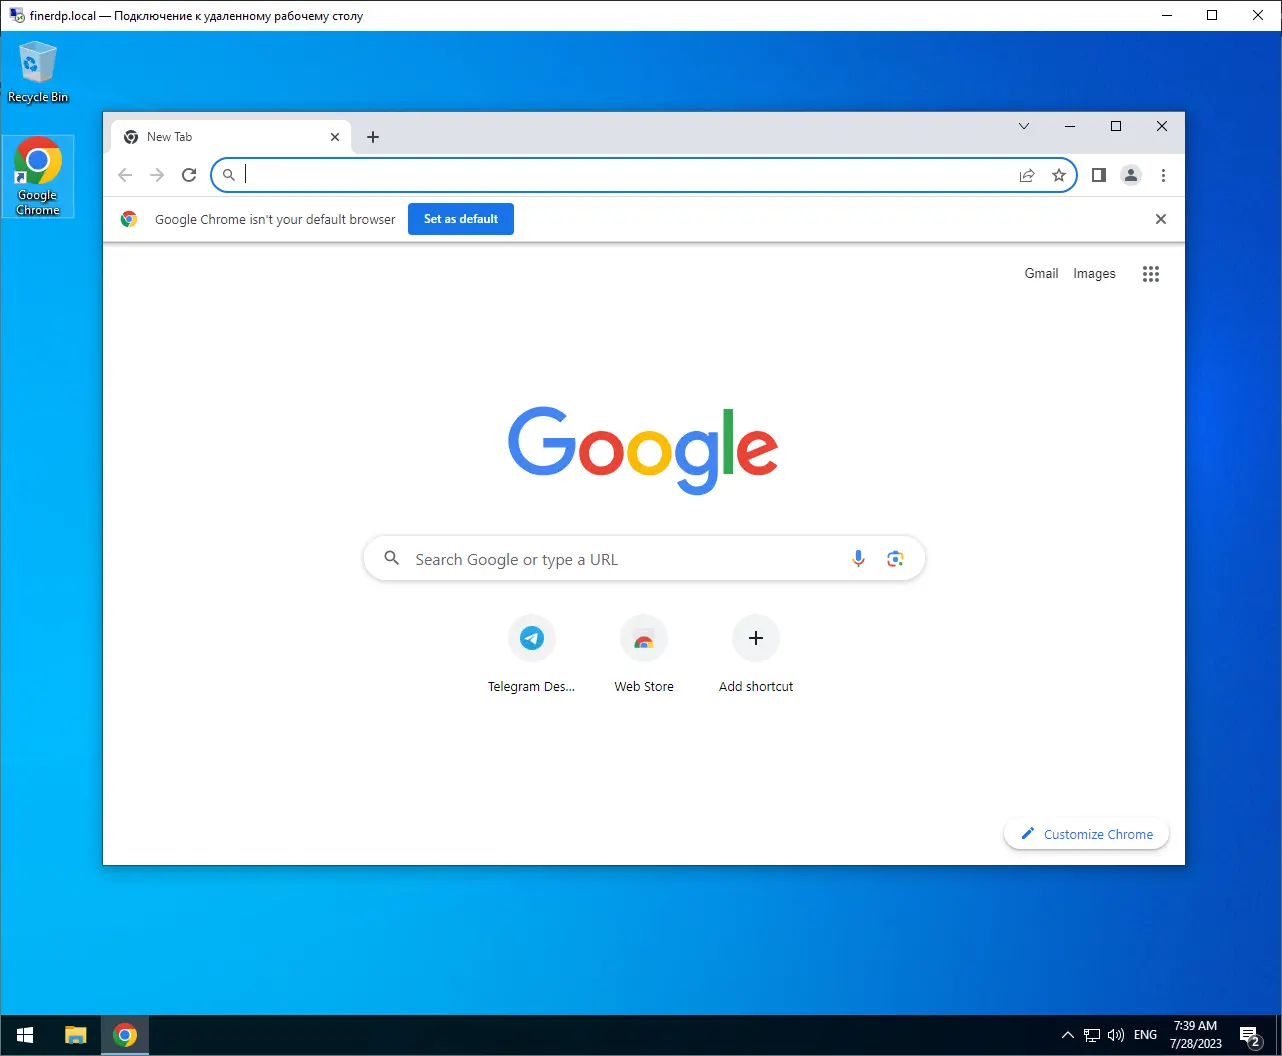 viber on a remote desktop rdp - open browser